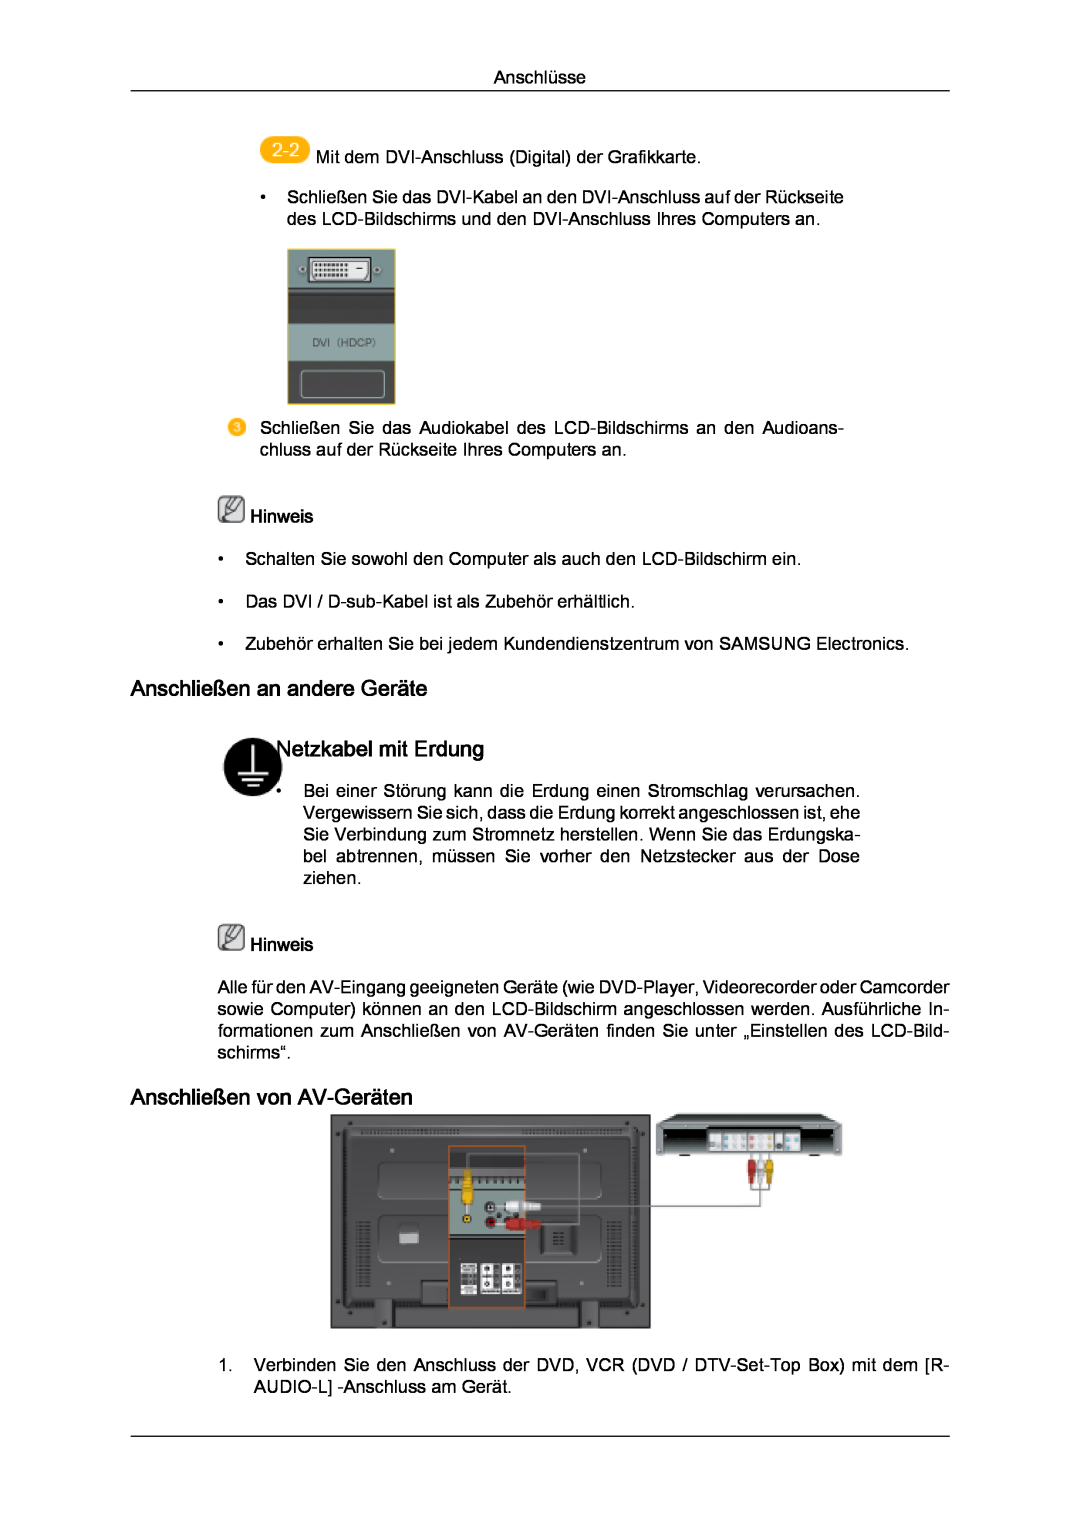 Samsung LH32MGULBC/EN manual Anschließen an andere Geräte Netzkabel mit Erdung, Anschließen von AV-Geräten, Hinweis 